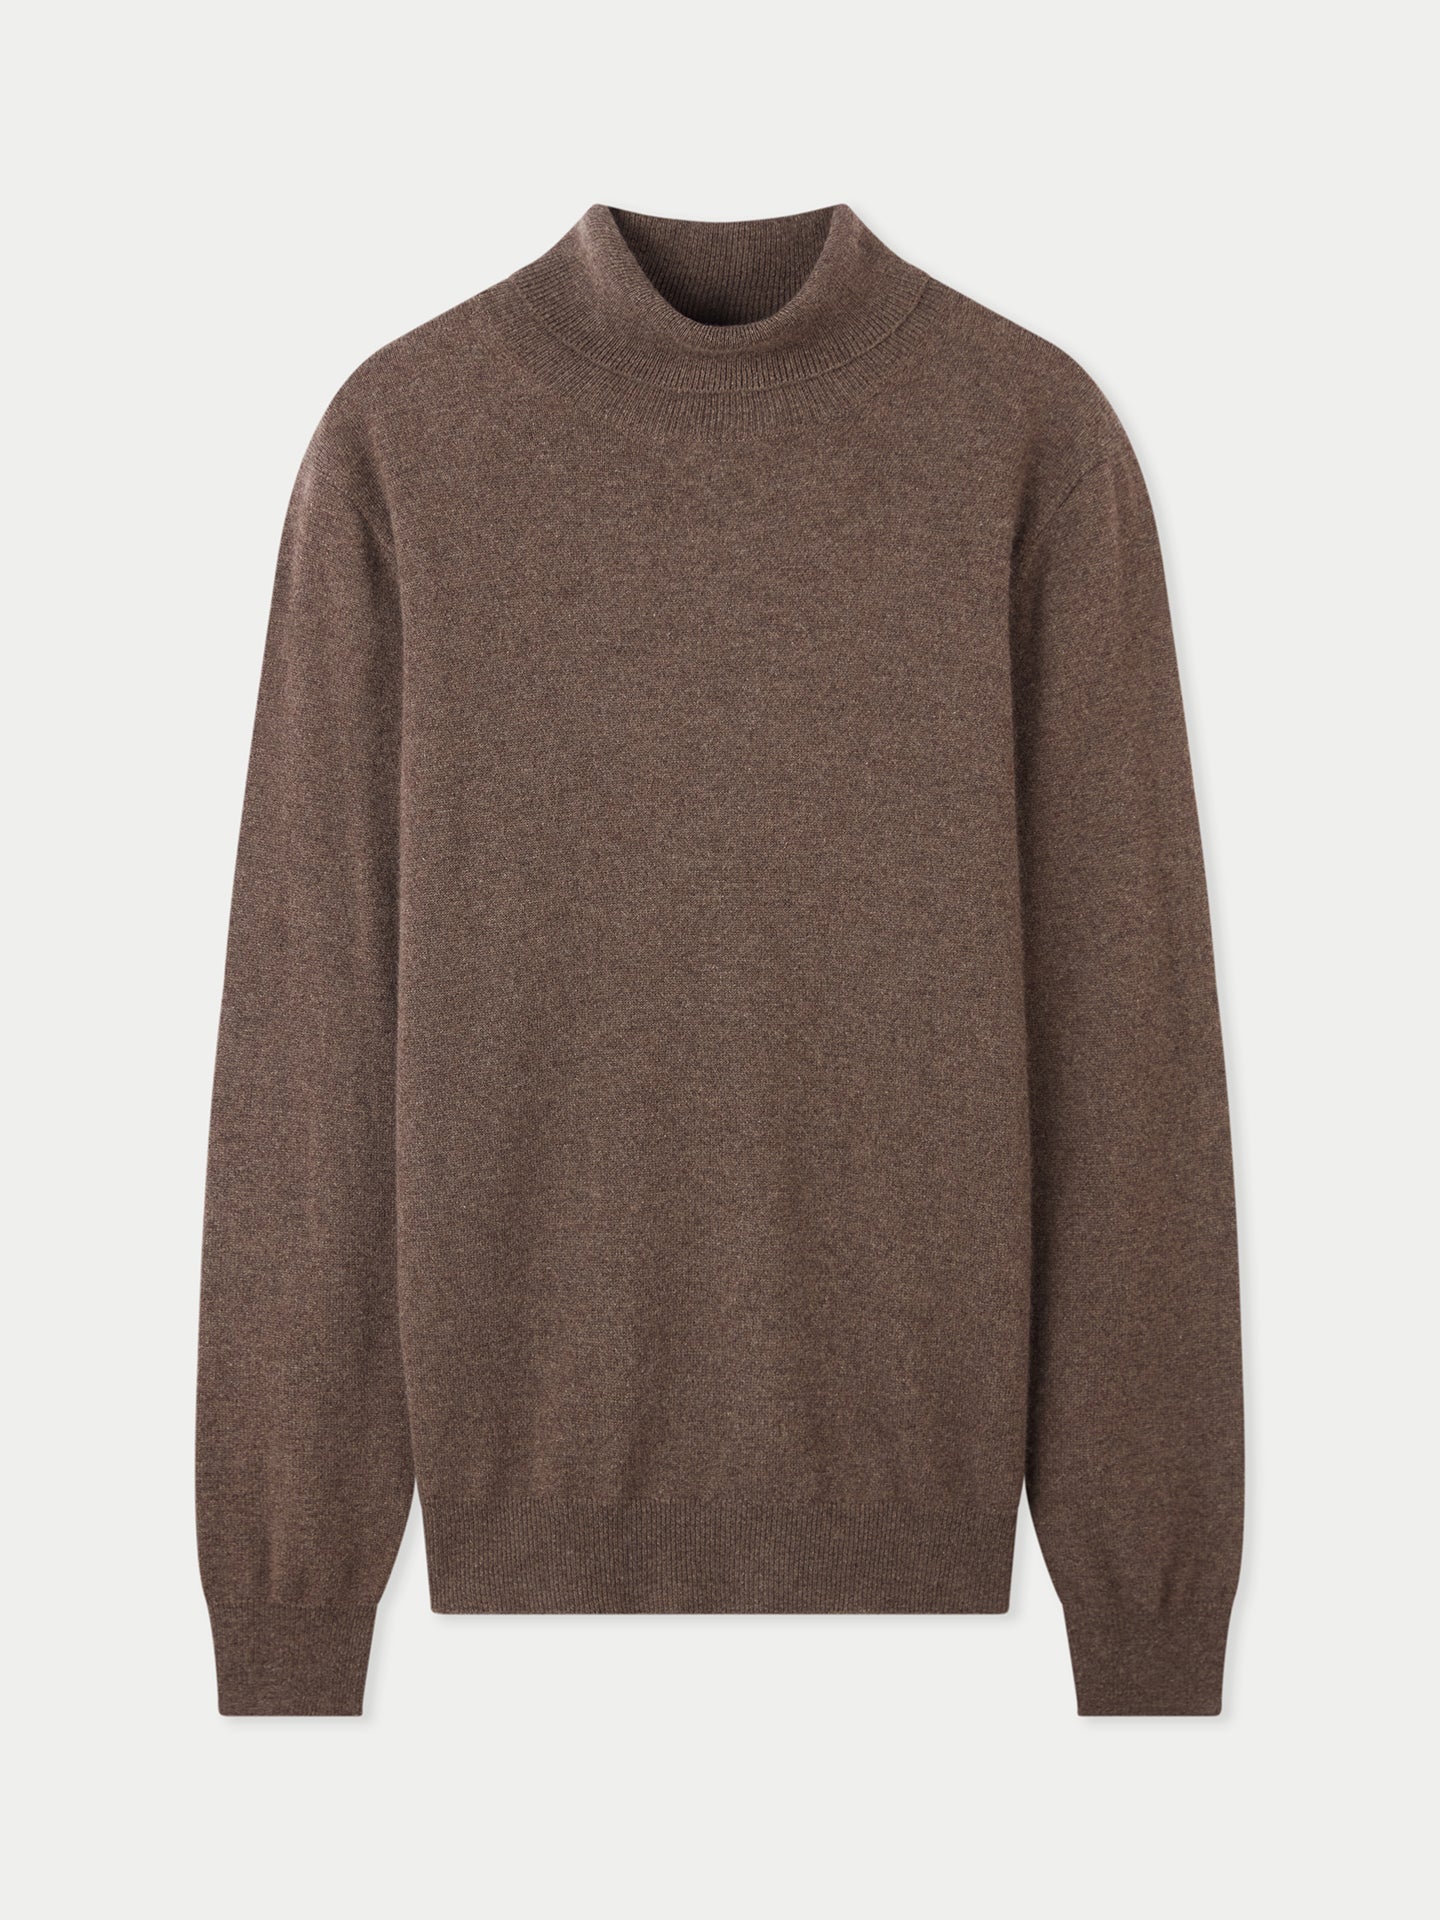 Men's Cashmere Basic Turtle Neck Sweater Cocoa - Gobi Cashmere